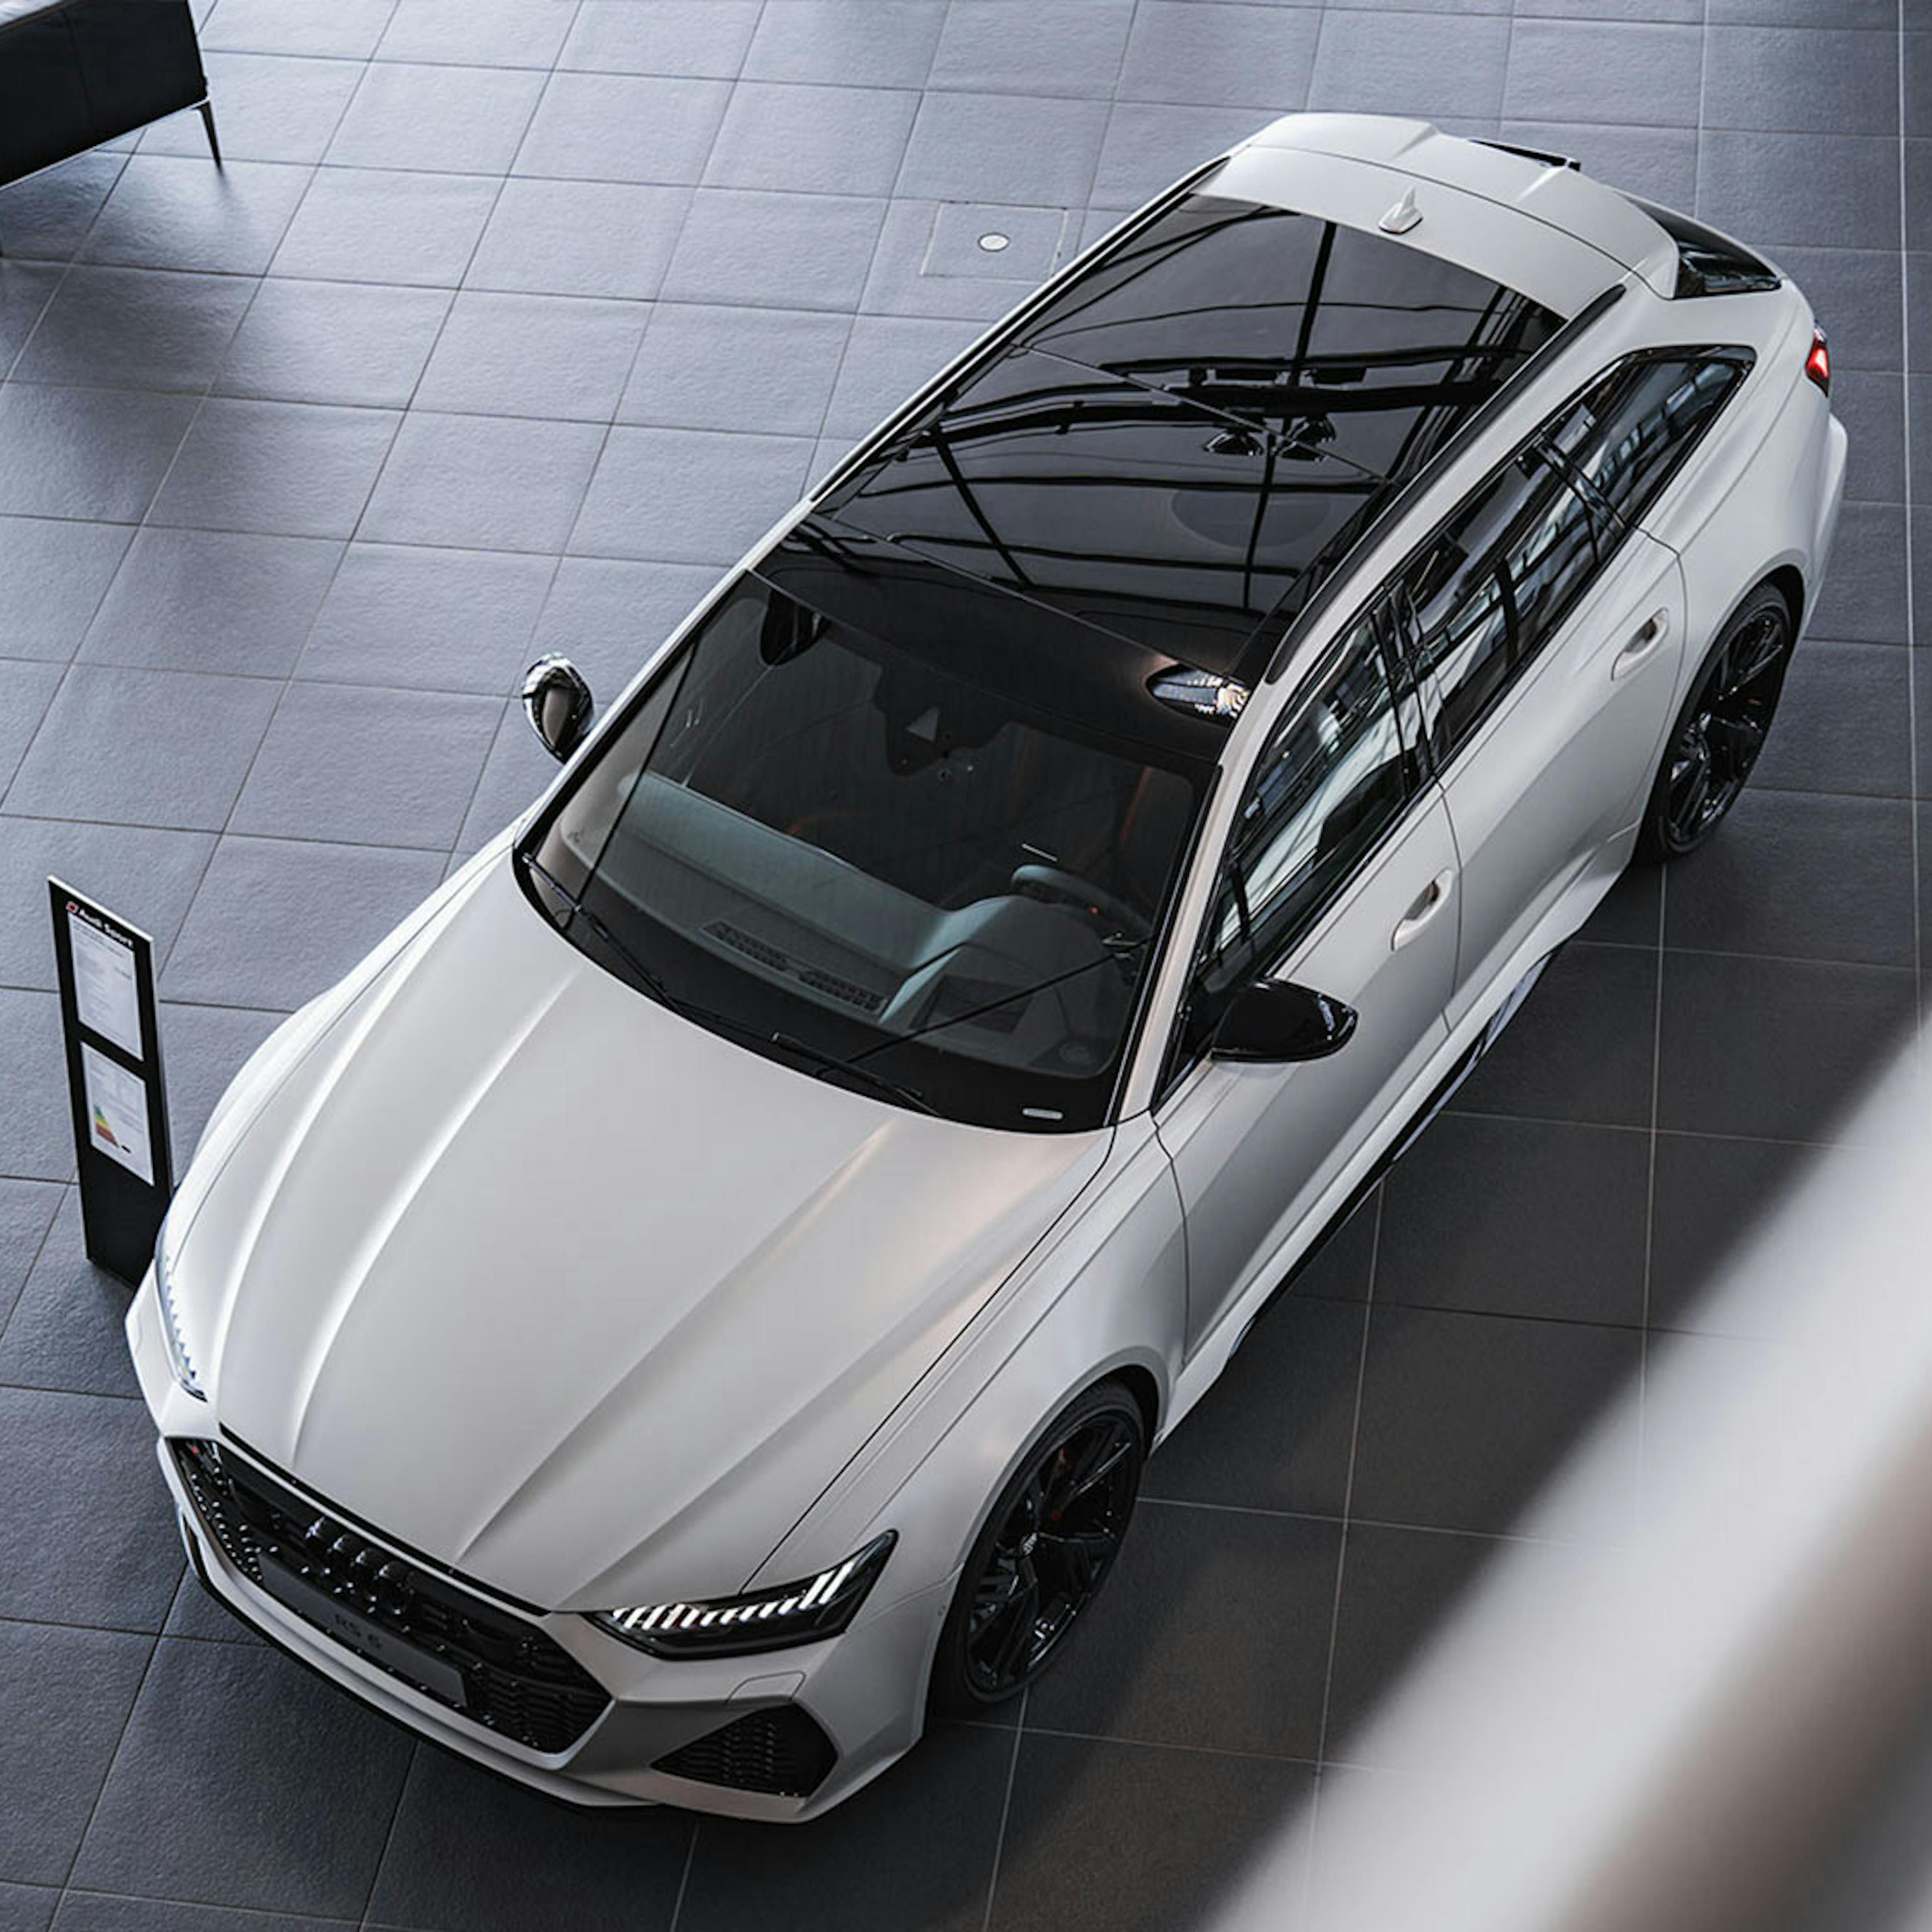 Ein silberner Audi steht im Showroom eines Autohauses.